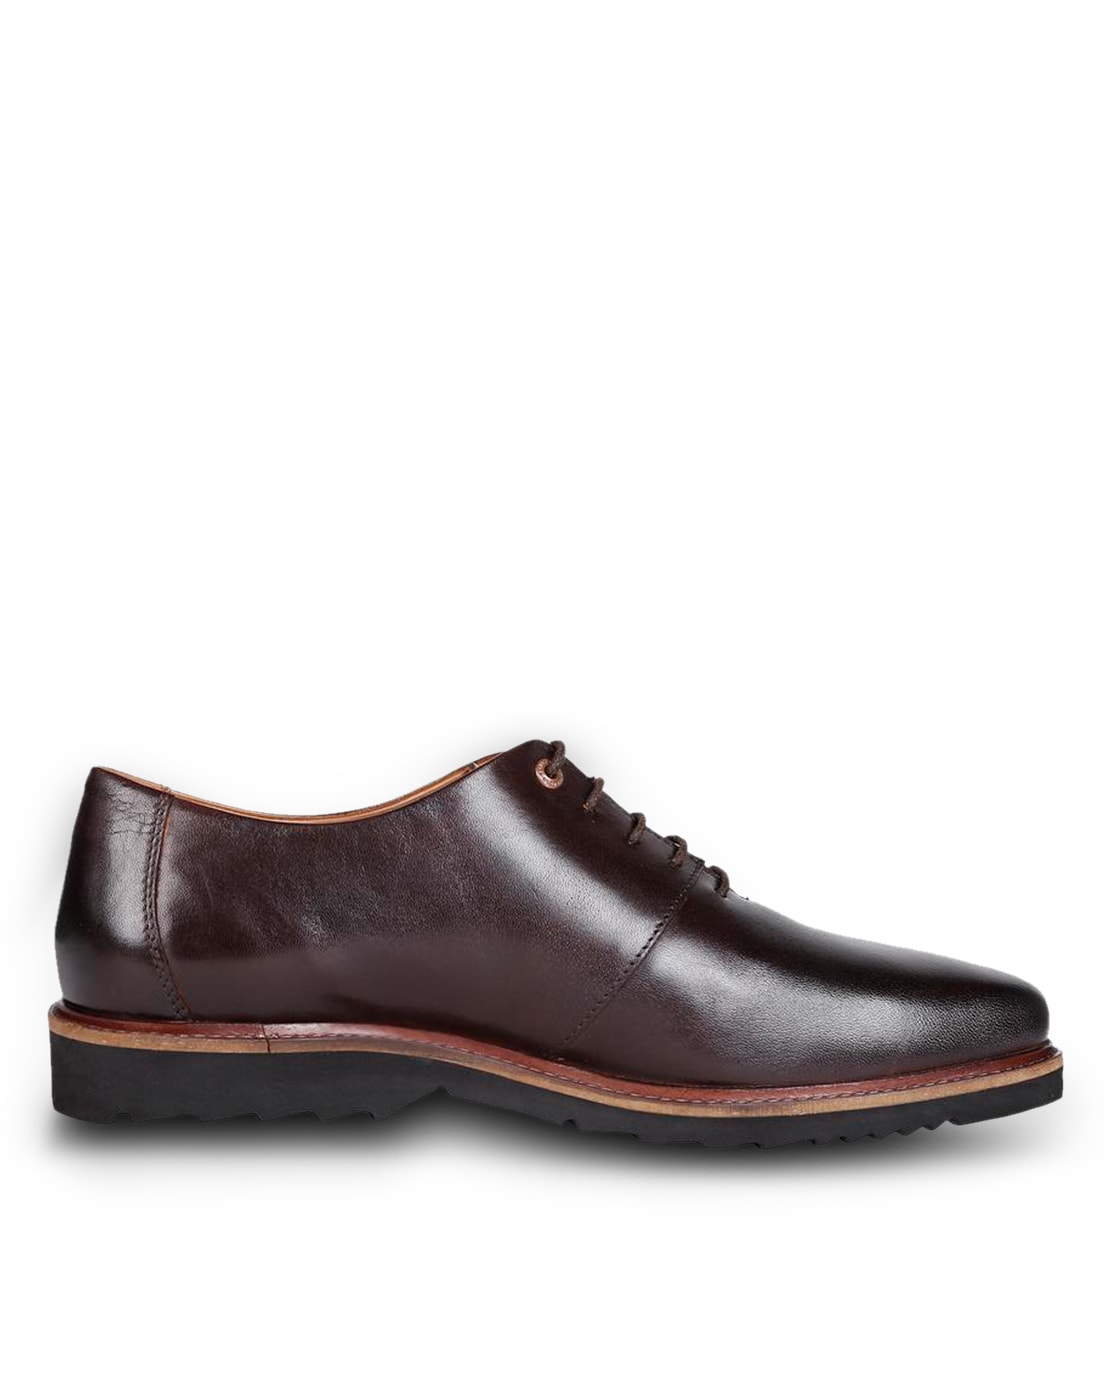 Buy Brown Casual Shoes for Men by VAN 